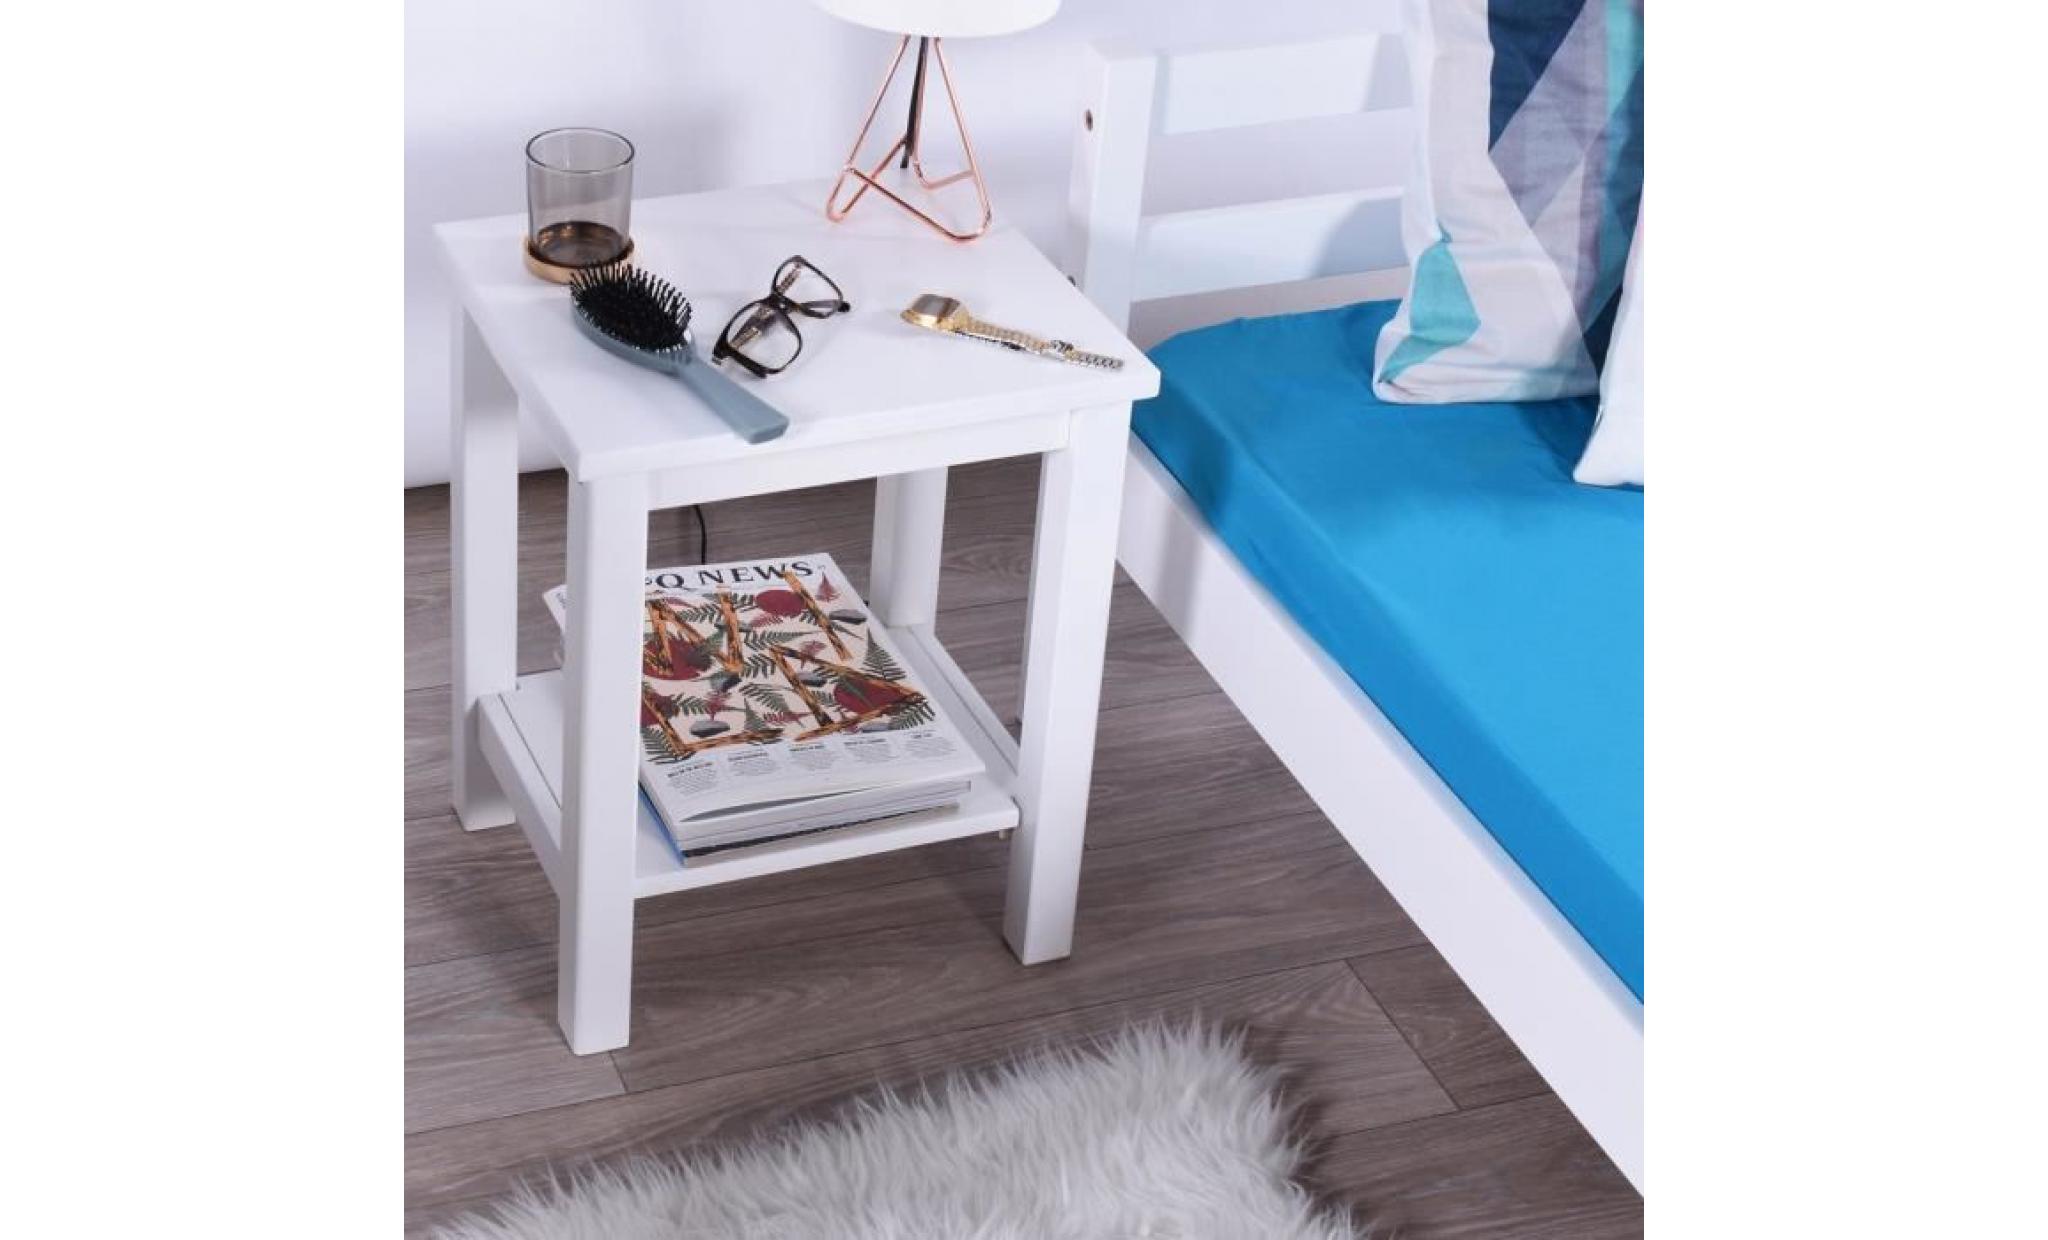 lot de 2 tables de chevet blanc   tables de nuit scandinaves  en bois   homy casa   avec rangement   38 x 31.5 x 47.3 cm pas cher